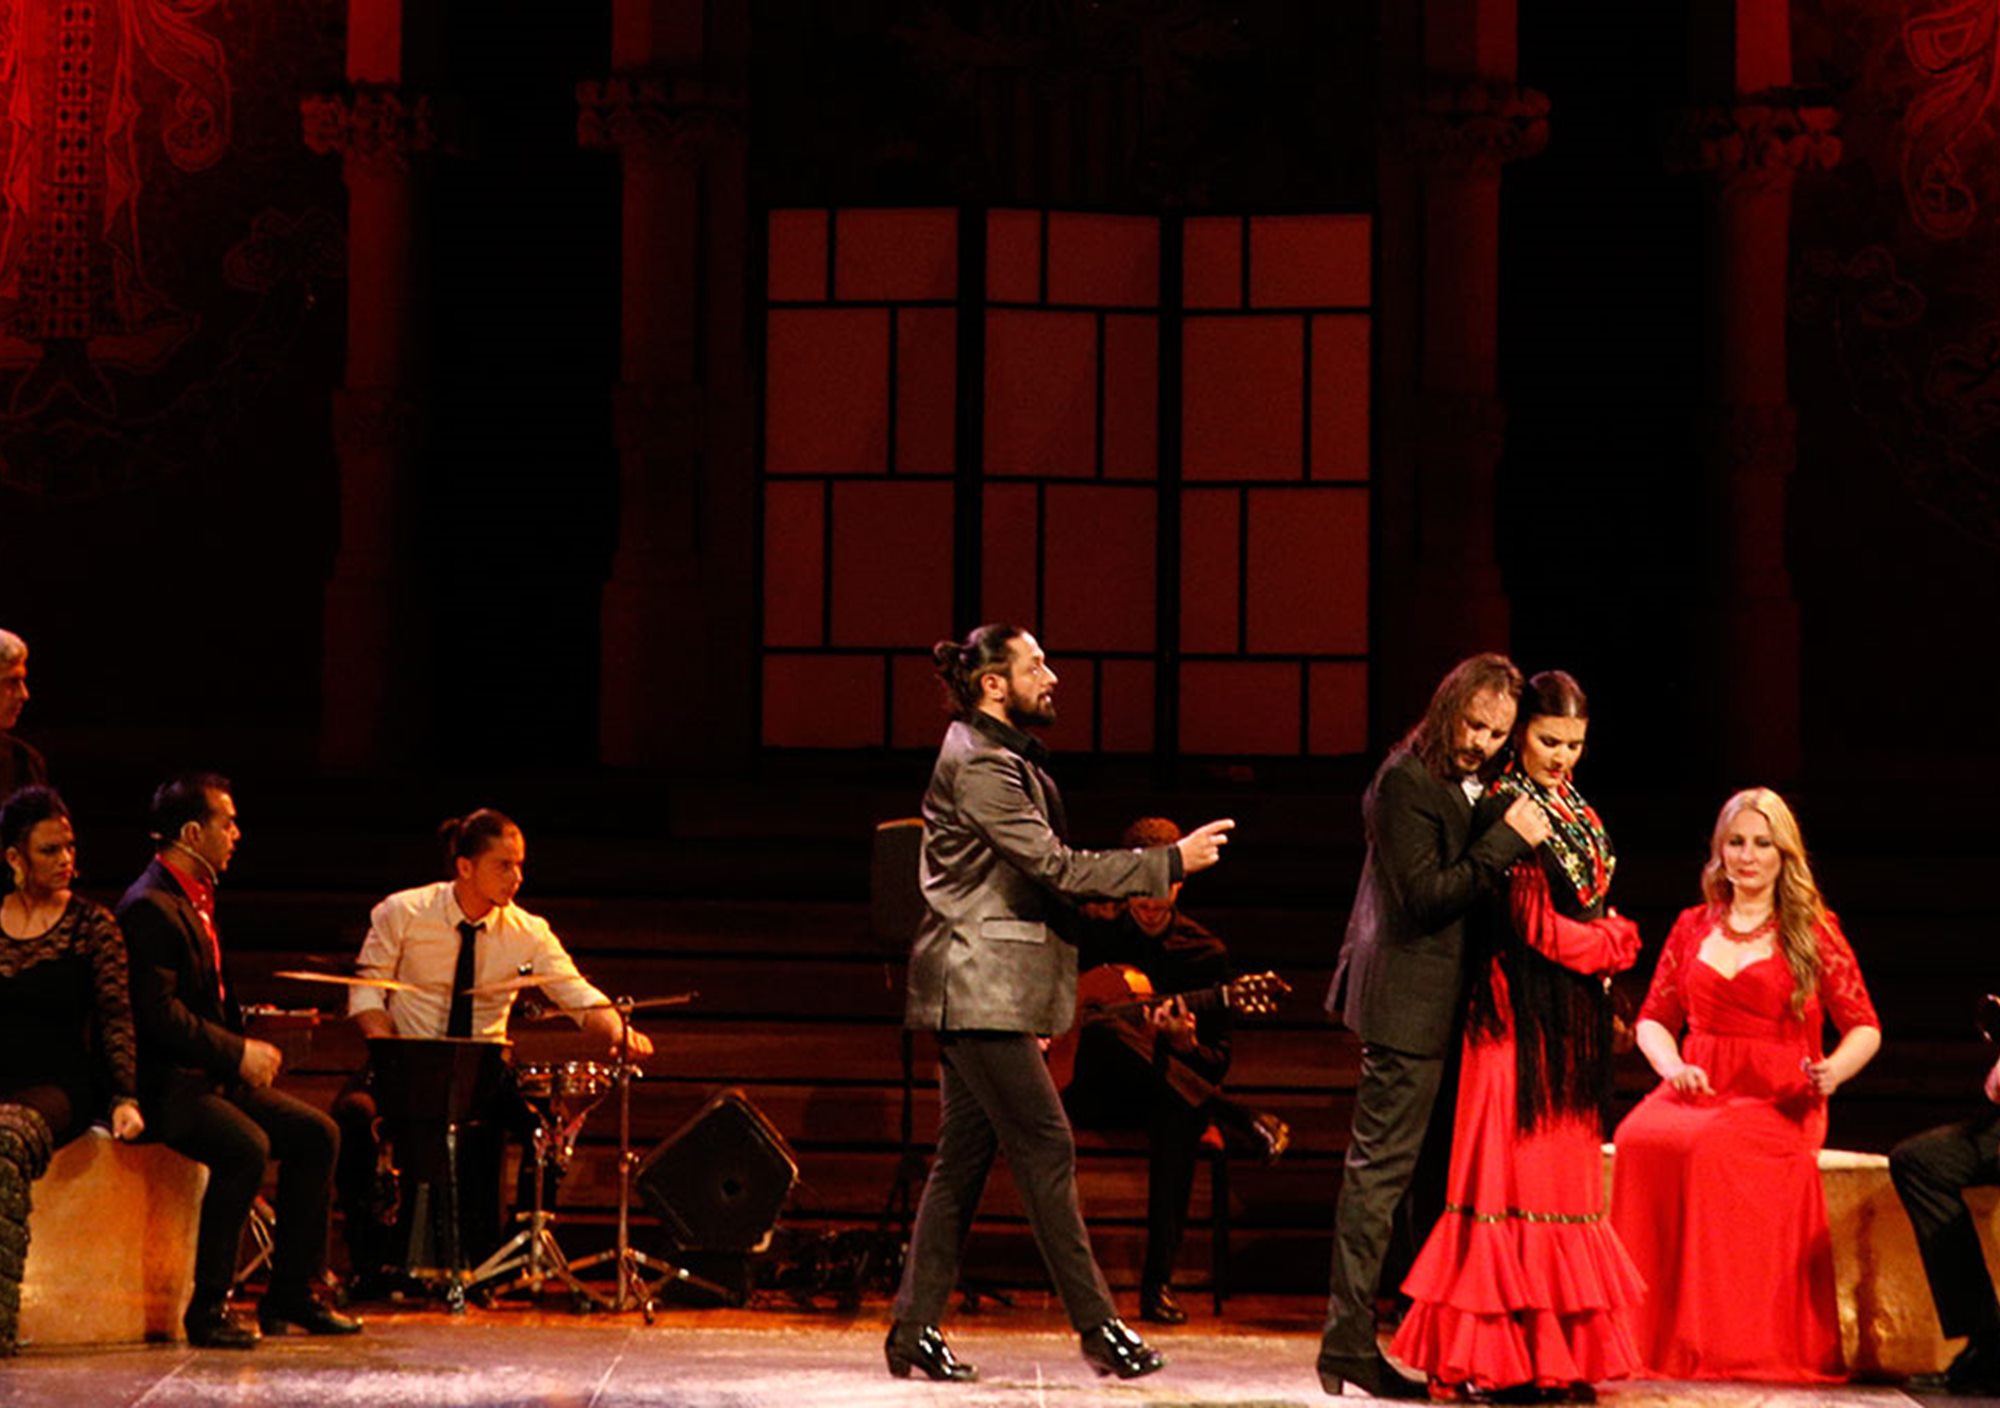 reservieren kaufen buchung besucht Fahrkarte karte karten Eintrittskarten Oper Flamenco show in Teatre Poliorama barcelona